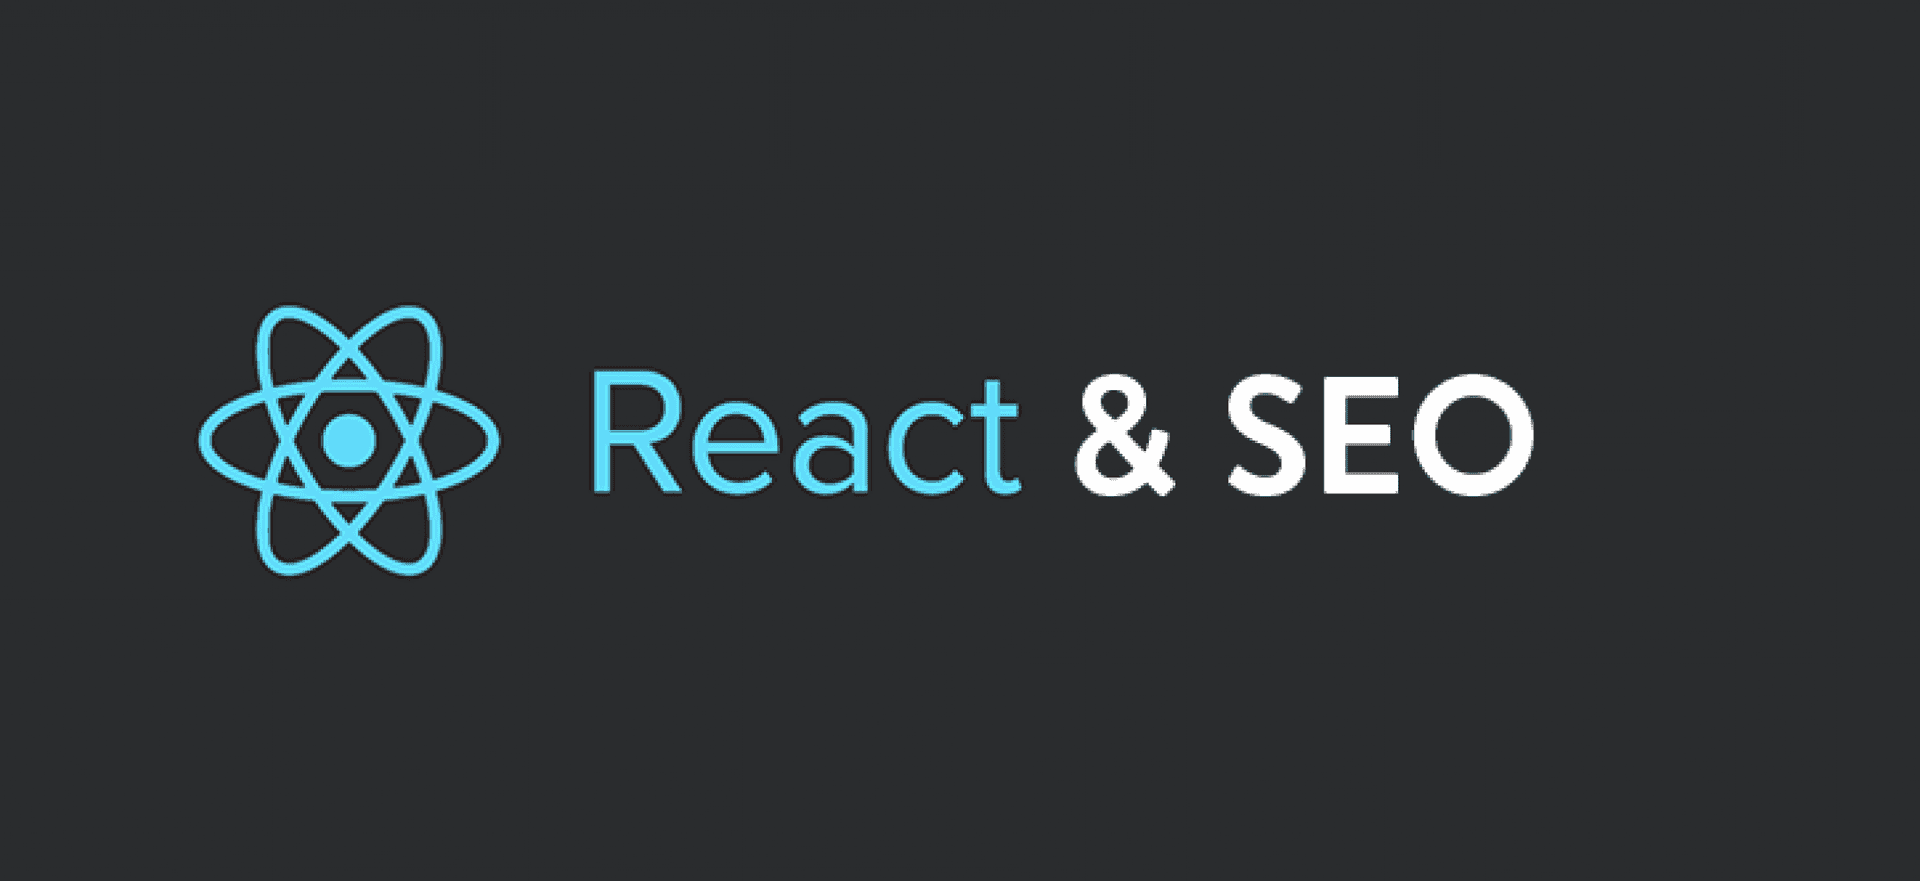  SEO vs. React: Google thông minh hơn bạn tưởng! - Featured image